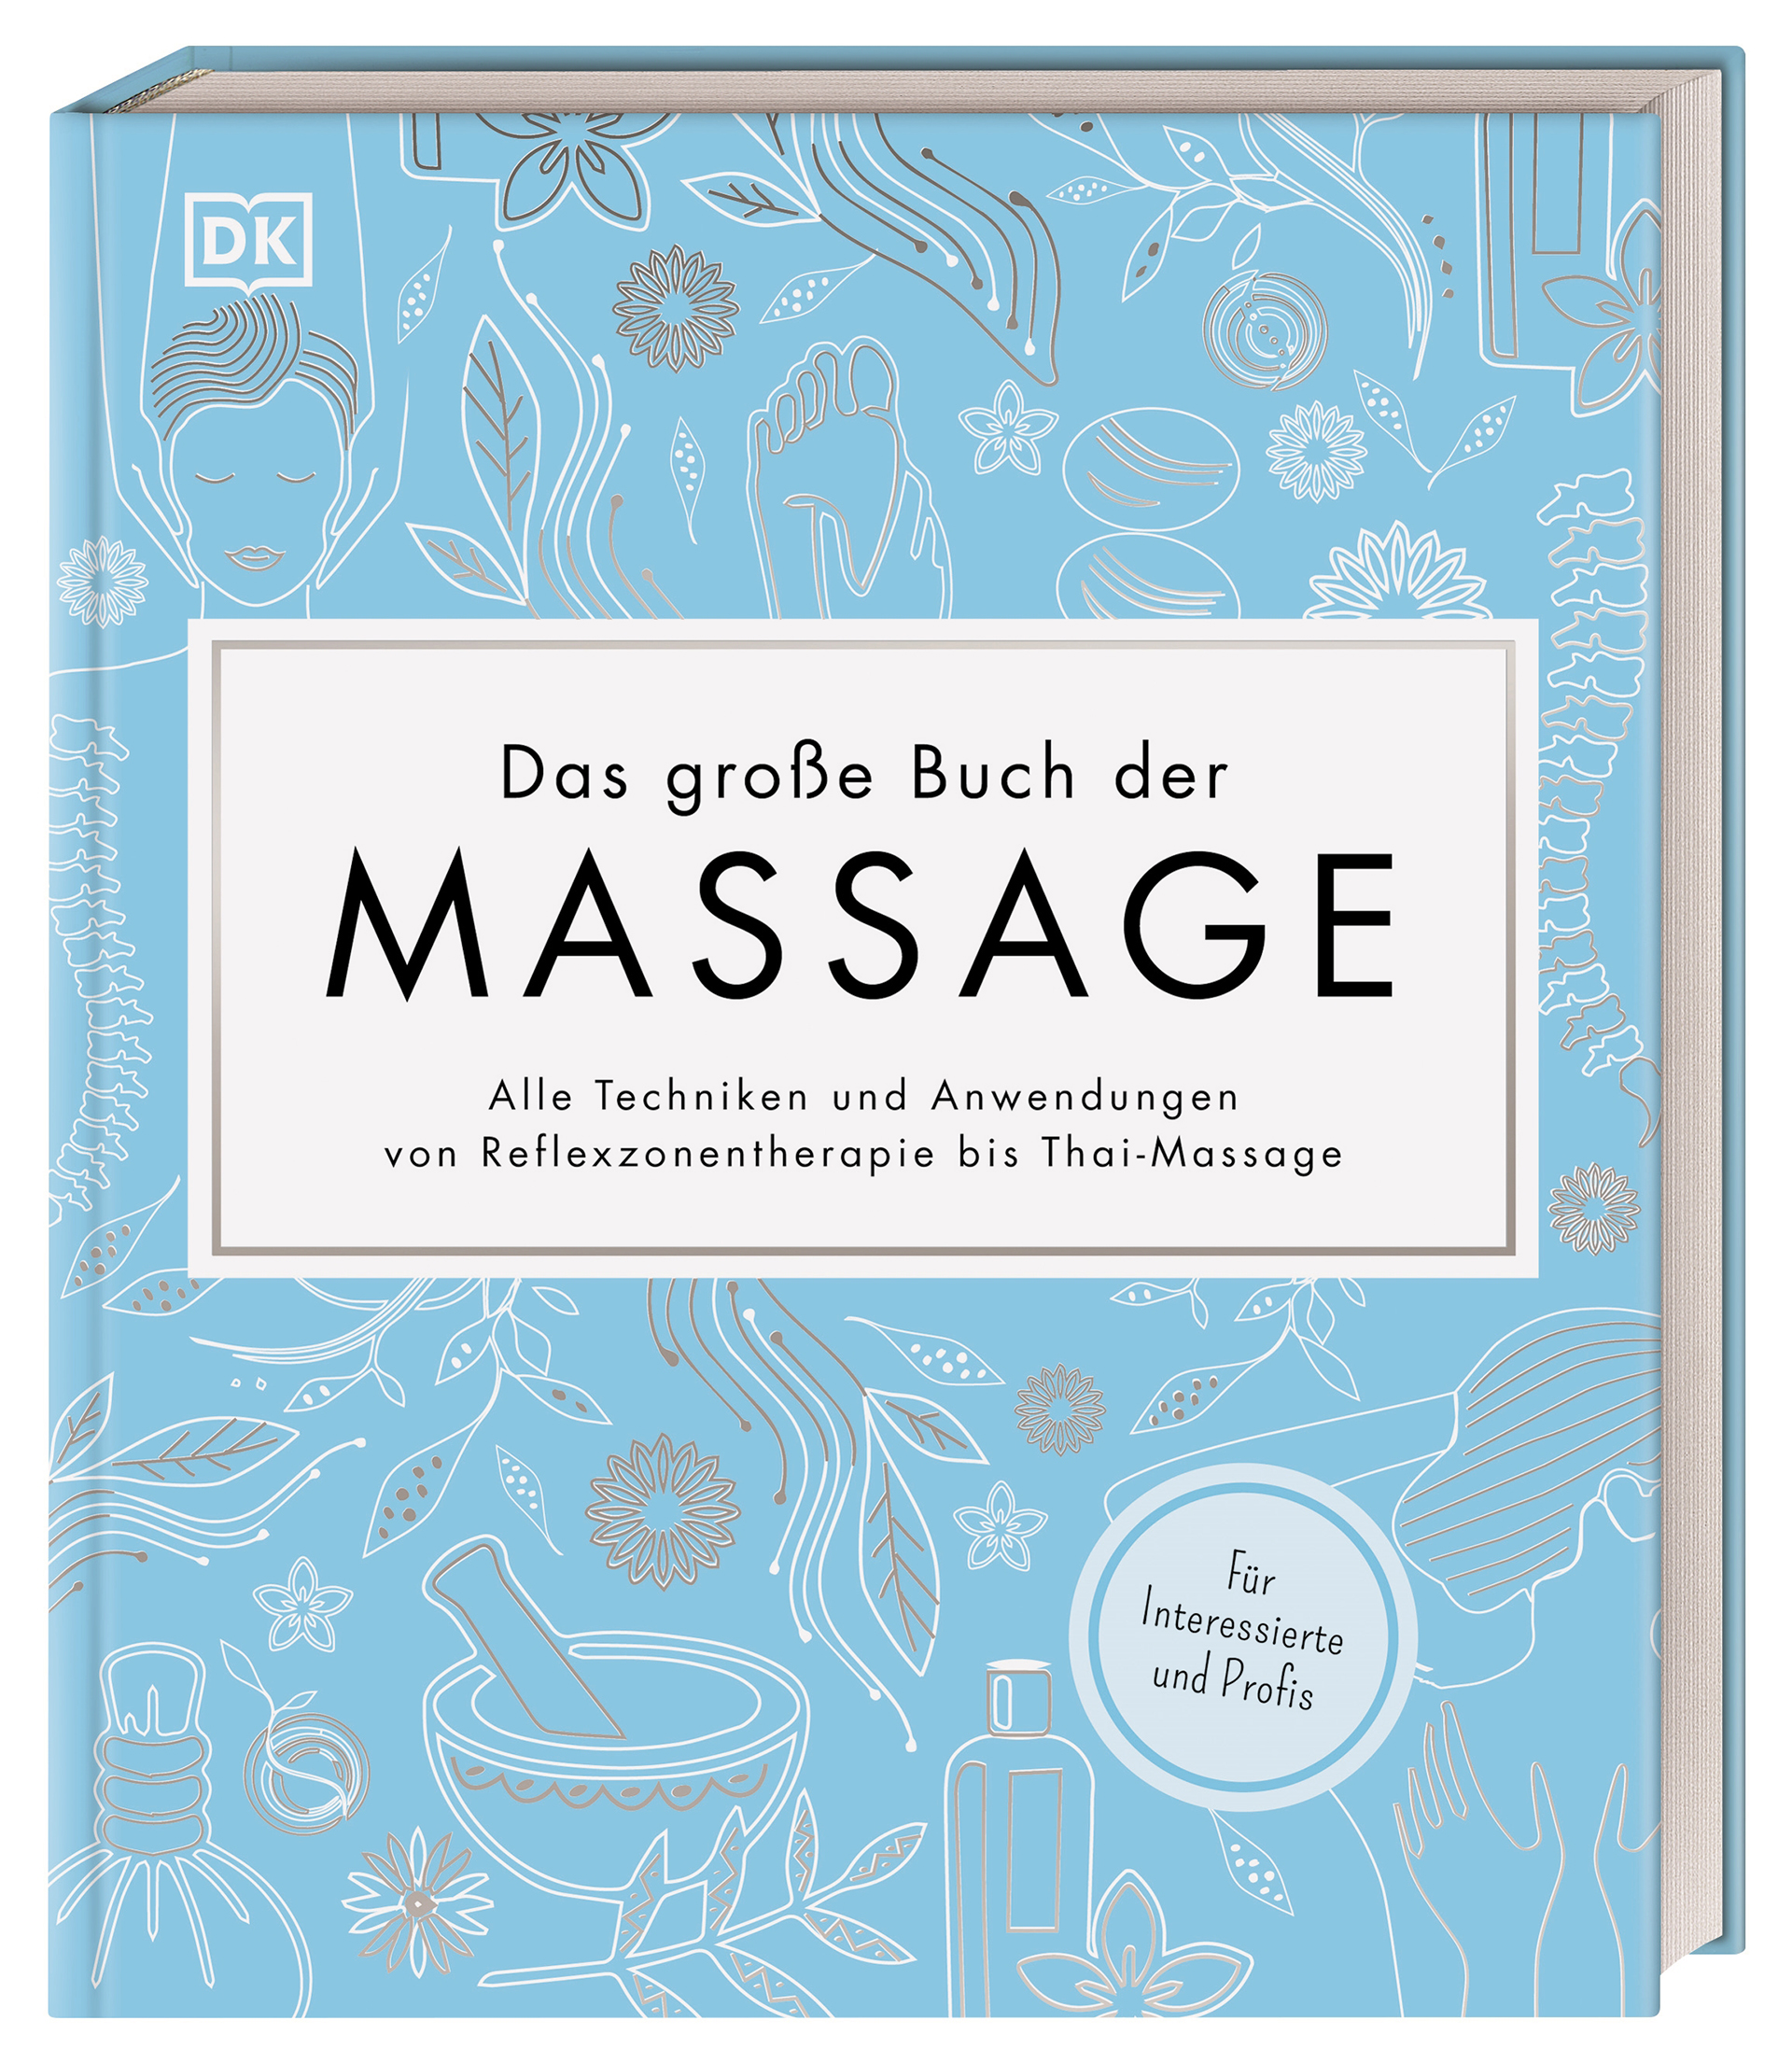 Das große Buch der Massage. Alle Techniken und Anwendungen von Reflexzonentherapie bis Thai-Massage. Für Interessierte und Profis